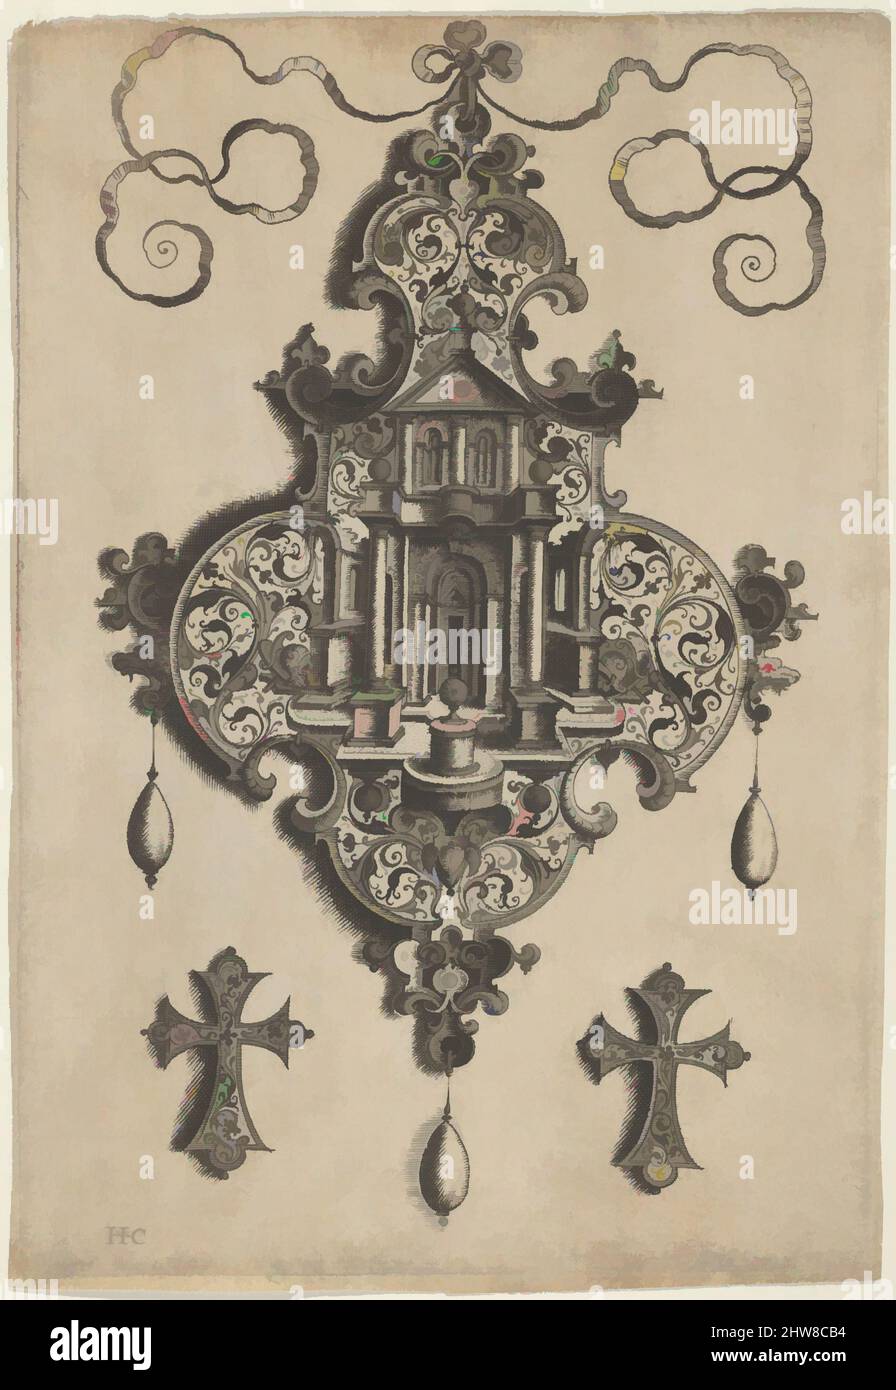 Arte ispirata dal Pendente Design con un Tempio e un vaso sopra ornamenti a croce, prima del 1573, incisione e ricatto; primo stato di due (New Hollstein), foglio: 5 7/8 x 4 1/16 in. (14,9 x 10,3 cm), Jan Collaert i (Olanda, Anversa ca. 1530–1581 Anversa), pannello verticale con, opere classiche modernizzate da Artotop con un tuffo di modernità. Forme, colore e valore, impatto visivo accattivante sulle emozioni artistiche attraverso la libertà delle opere d'arte in modo contemporaneo. Un messaggio senza tempo che persegue una nuova direzione selvaggiamente creativa. Artisti che si rivolgono al supporto digitale e creano l'NFT Artotop Foto Stock